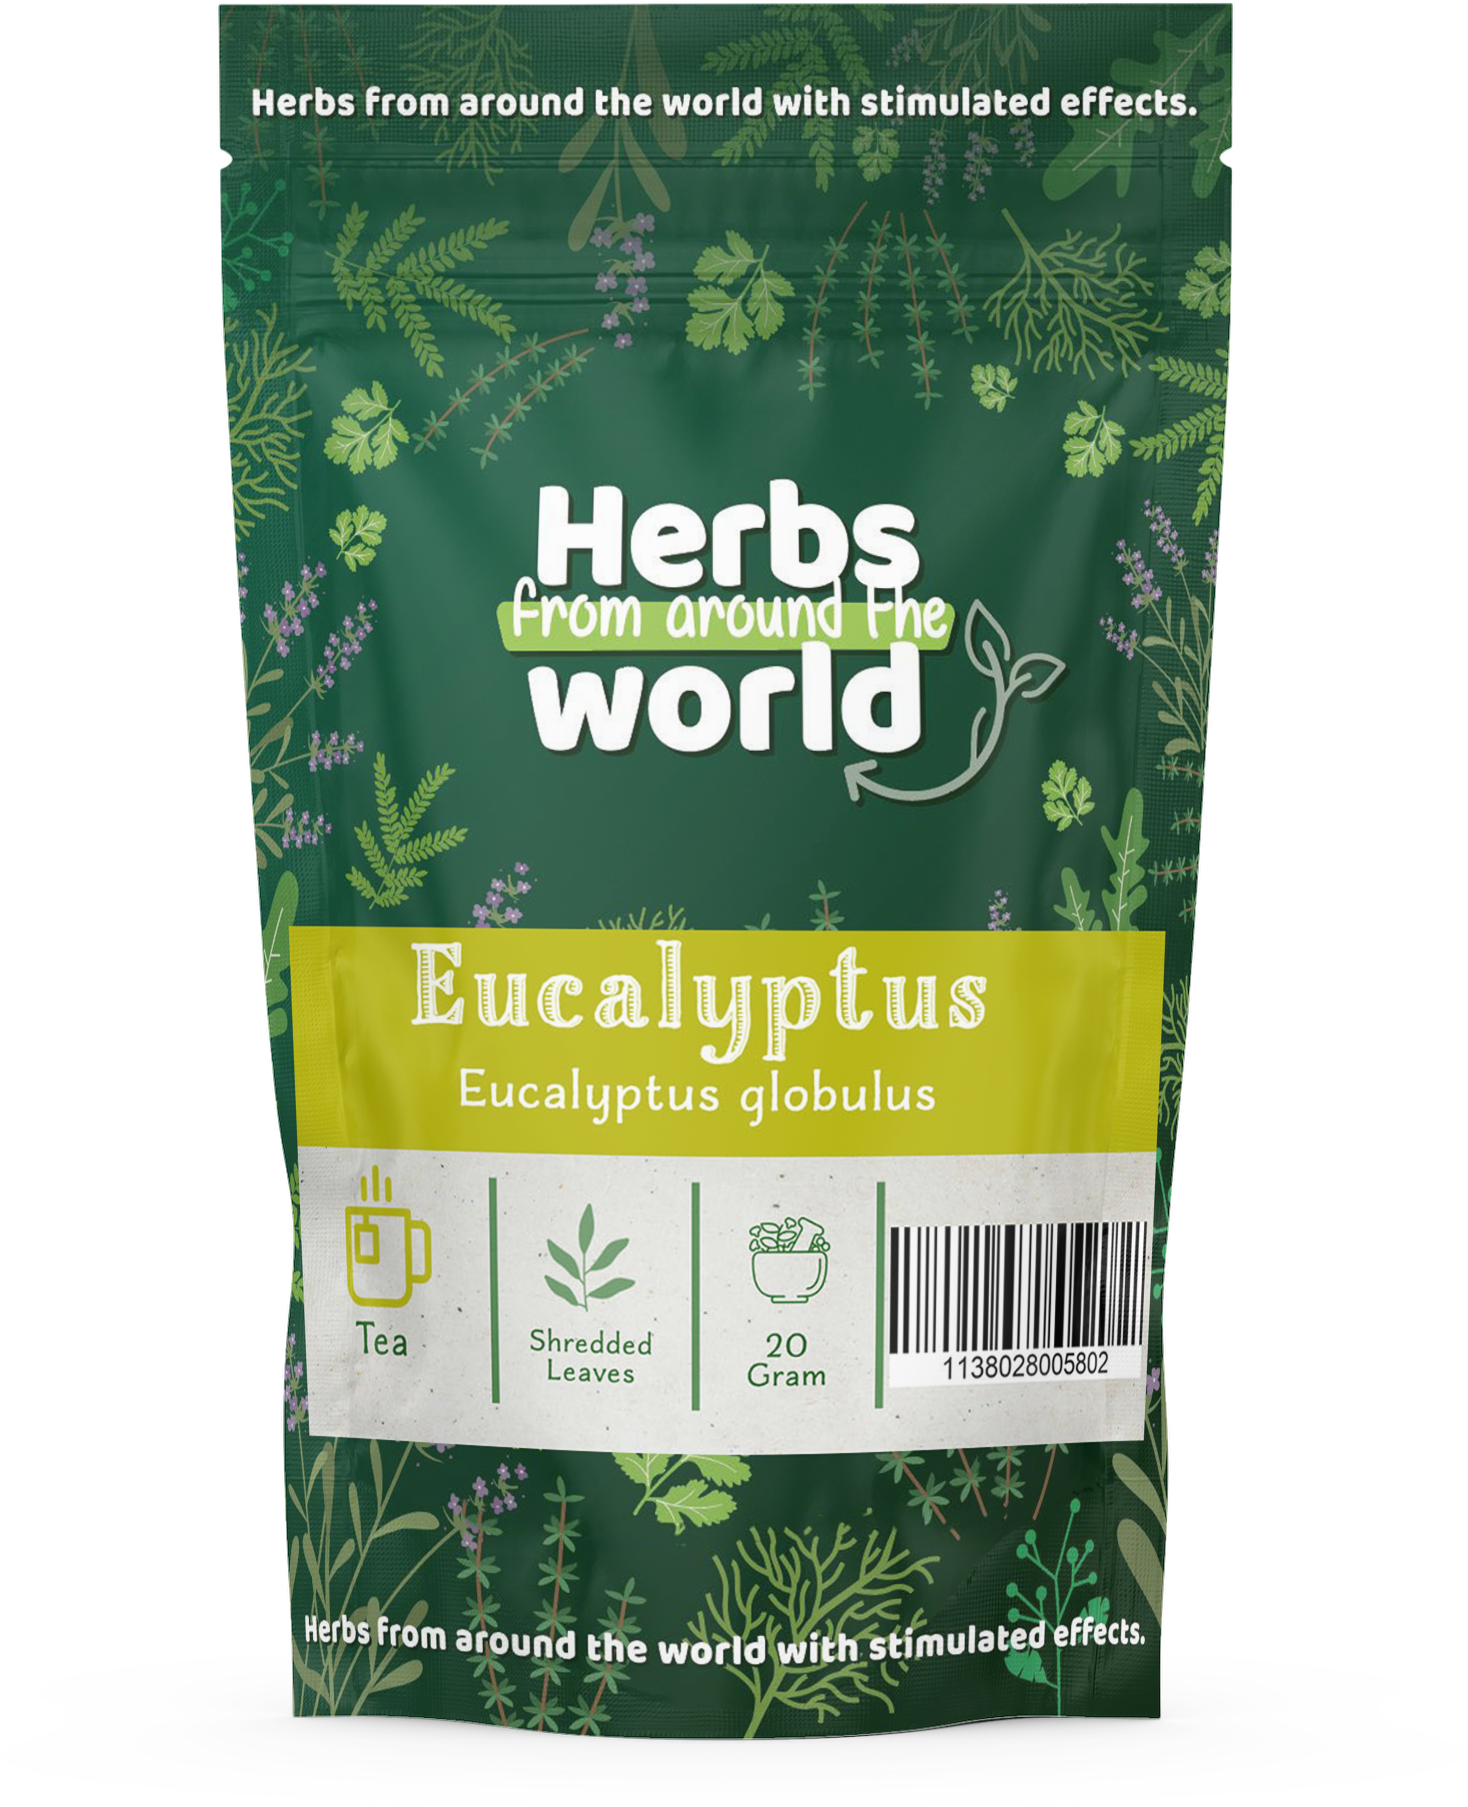 Eucalyptus globulus - shredded leaves (Eucalyptus)